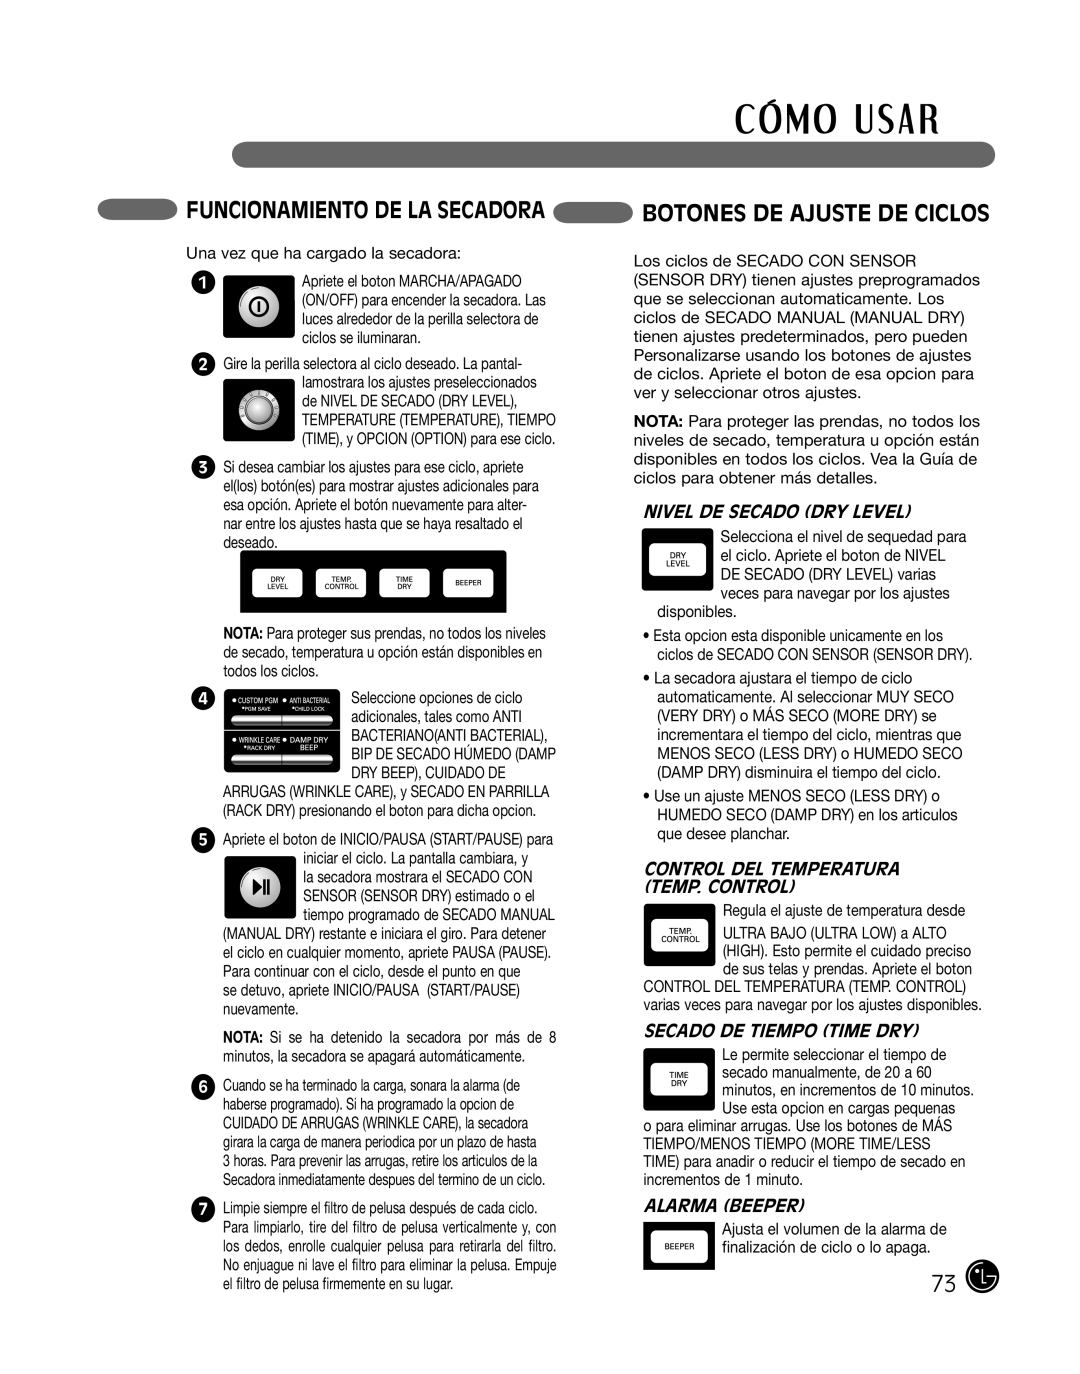 LG Electronics P154 FUNCIONAMIENTO de LA SECADORA BOTONES DE AJUSTE DE CICLOS, Nivel De Secado Dry Level, Alarma Beeper 